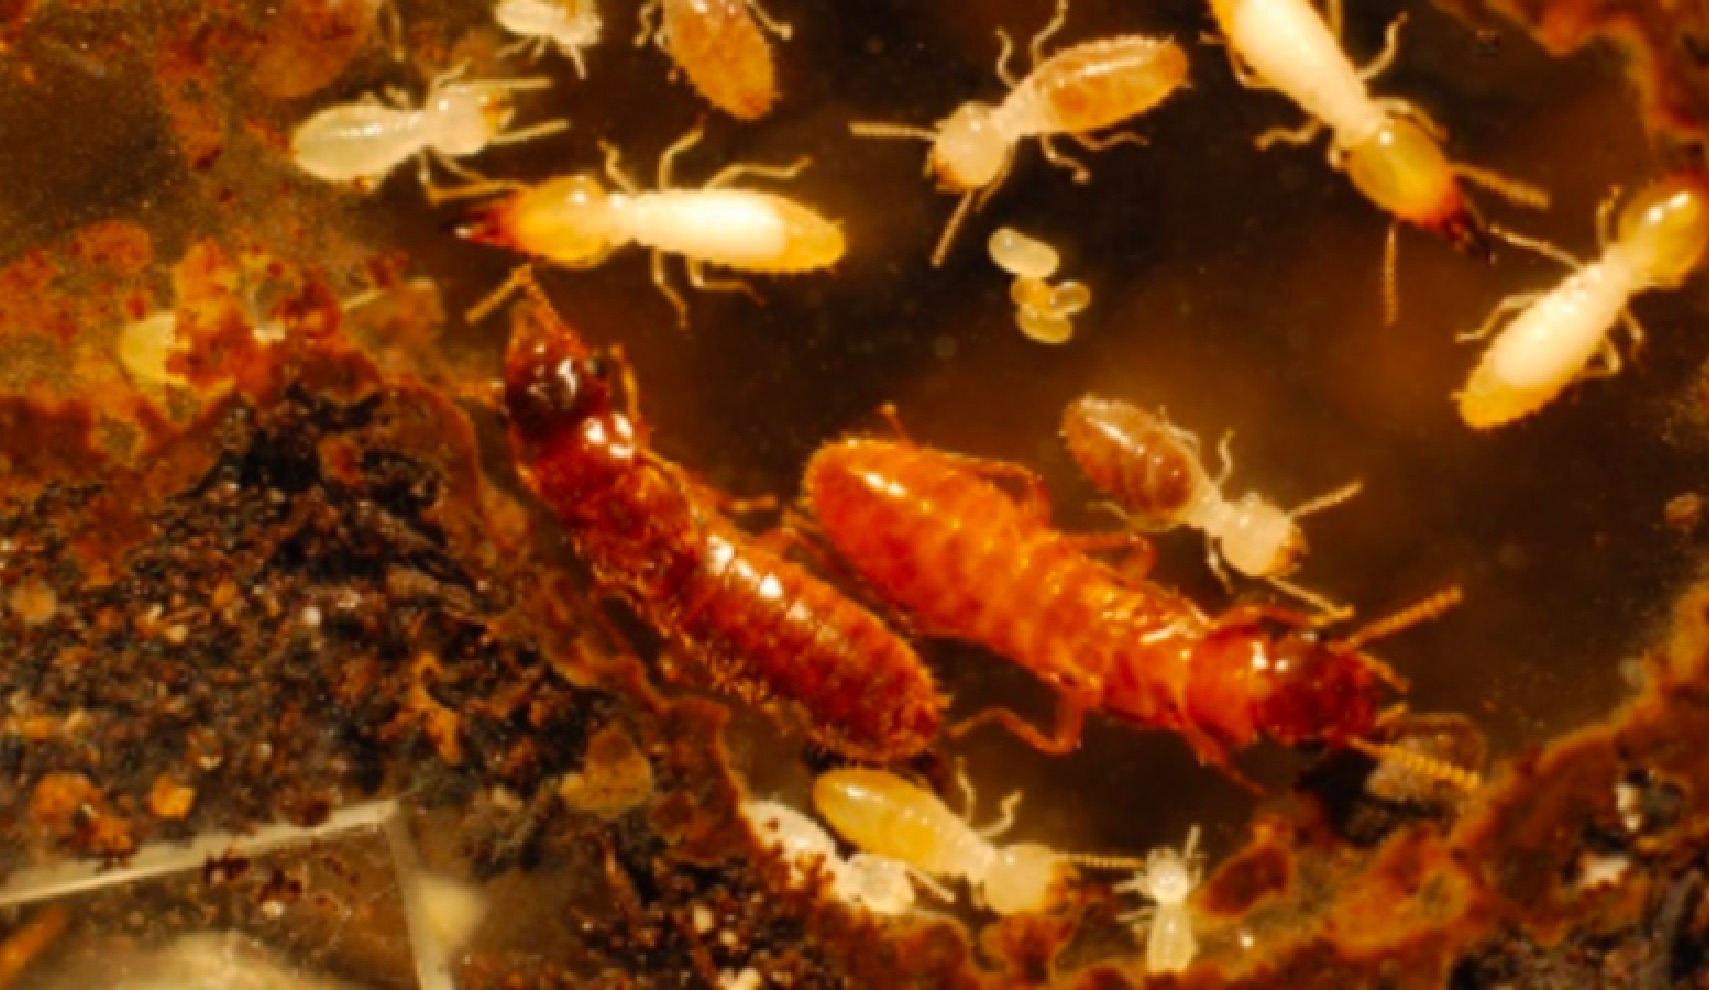 Parasite termite